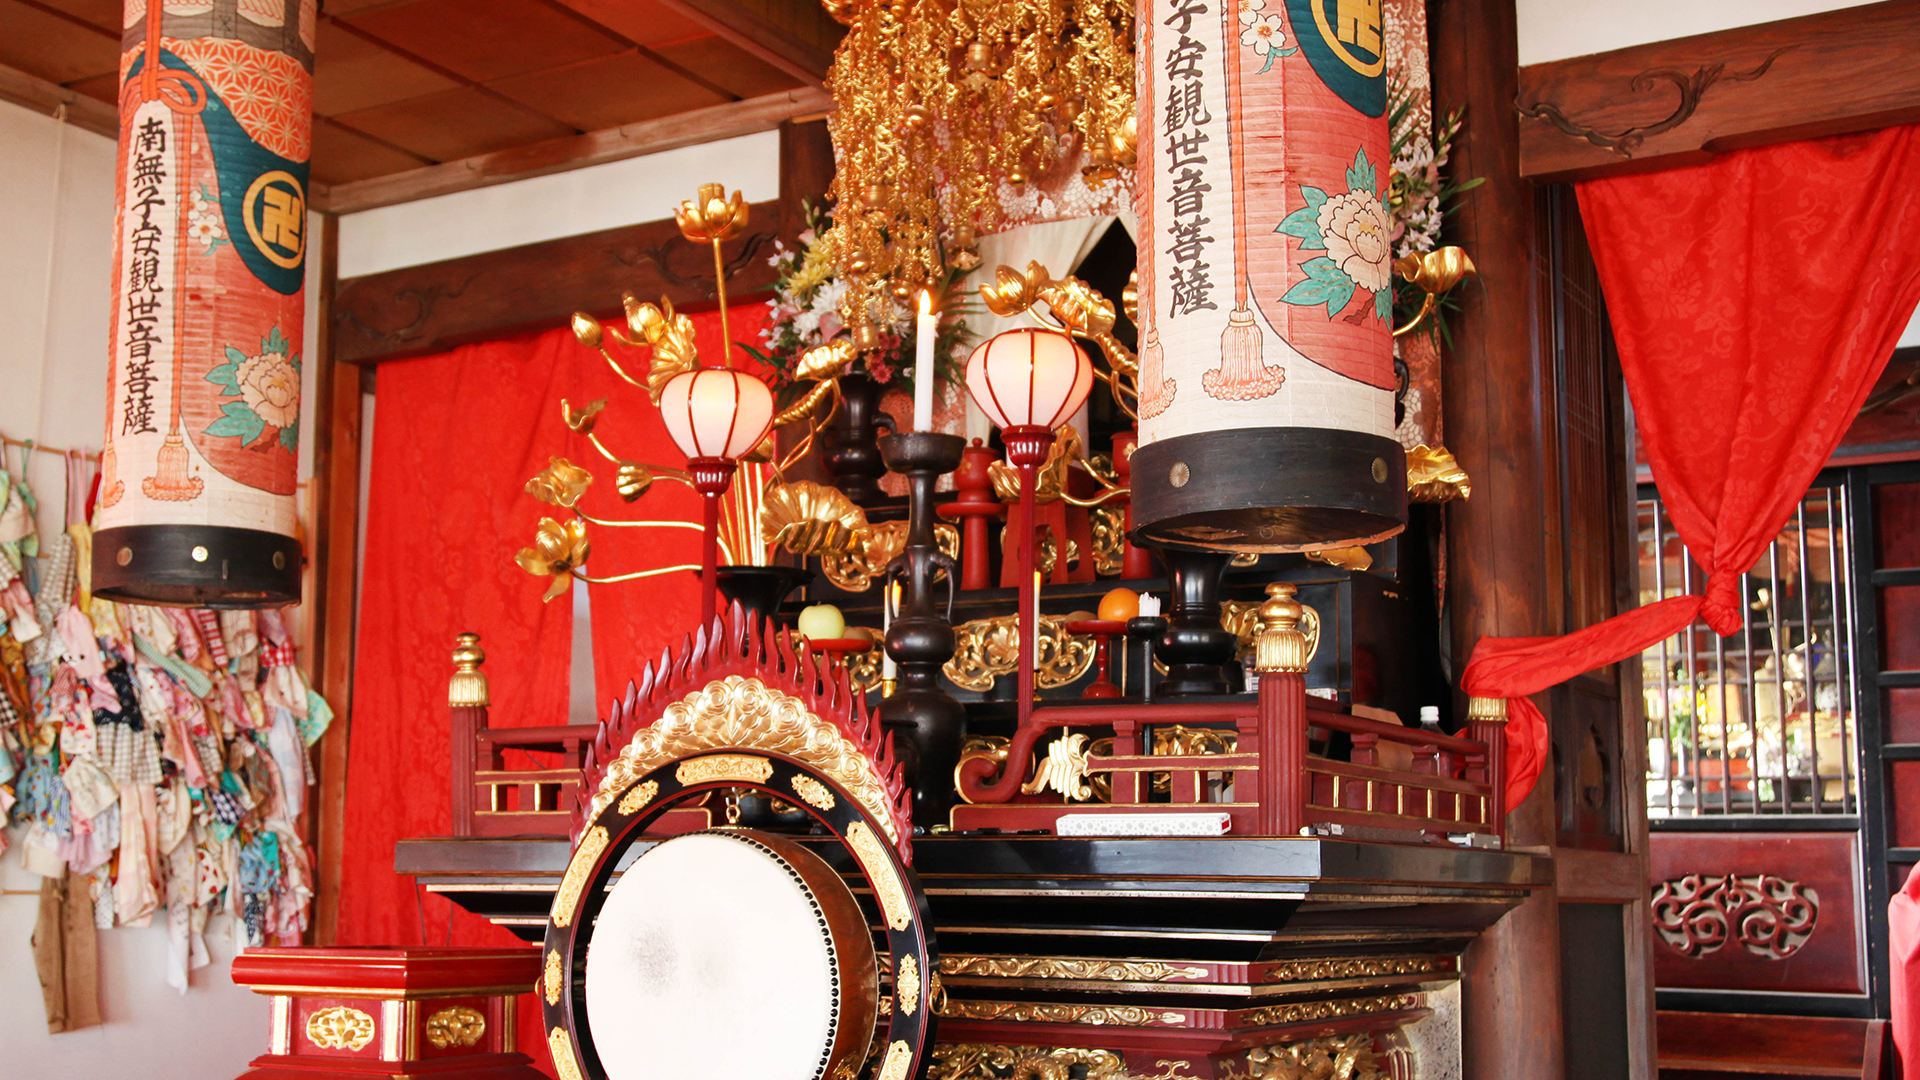 静岡県菊川市の観光スポット「西福寺」子宝・安産・縁結びの寺。本堂正面にある子安観音は、赤ちゃんを抱いている形をした観音様。安産や子育てのご利益があるとされている。撮影自由。インスタ映え。